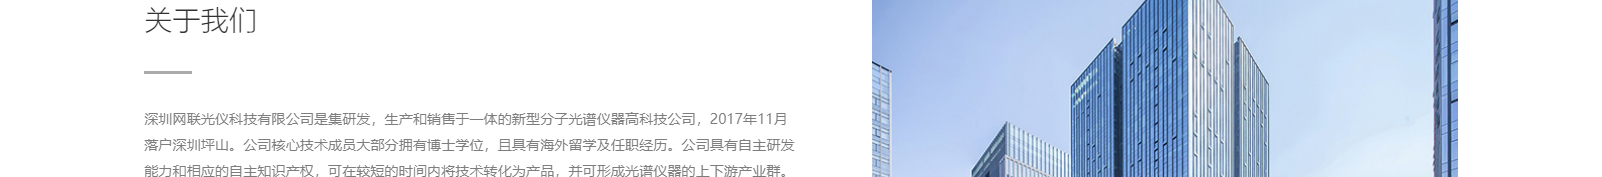 深圳网联光仪有限公司_响应式网站建设设计案例